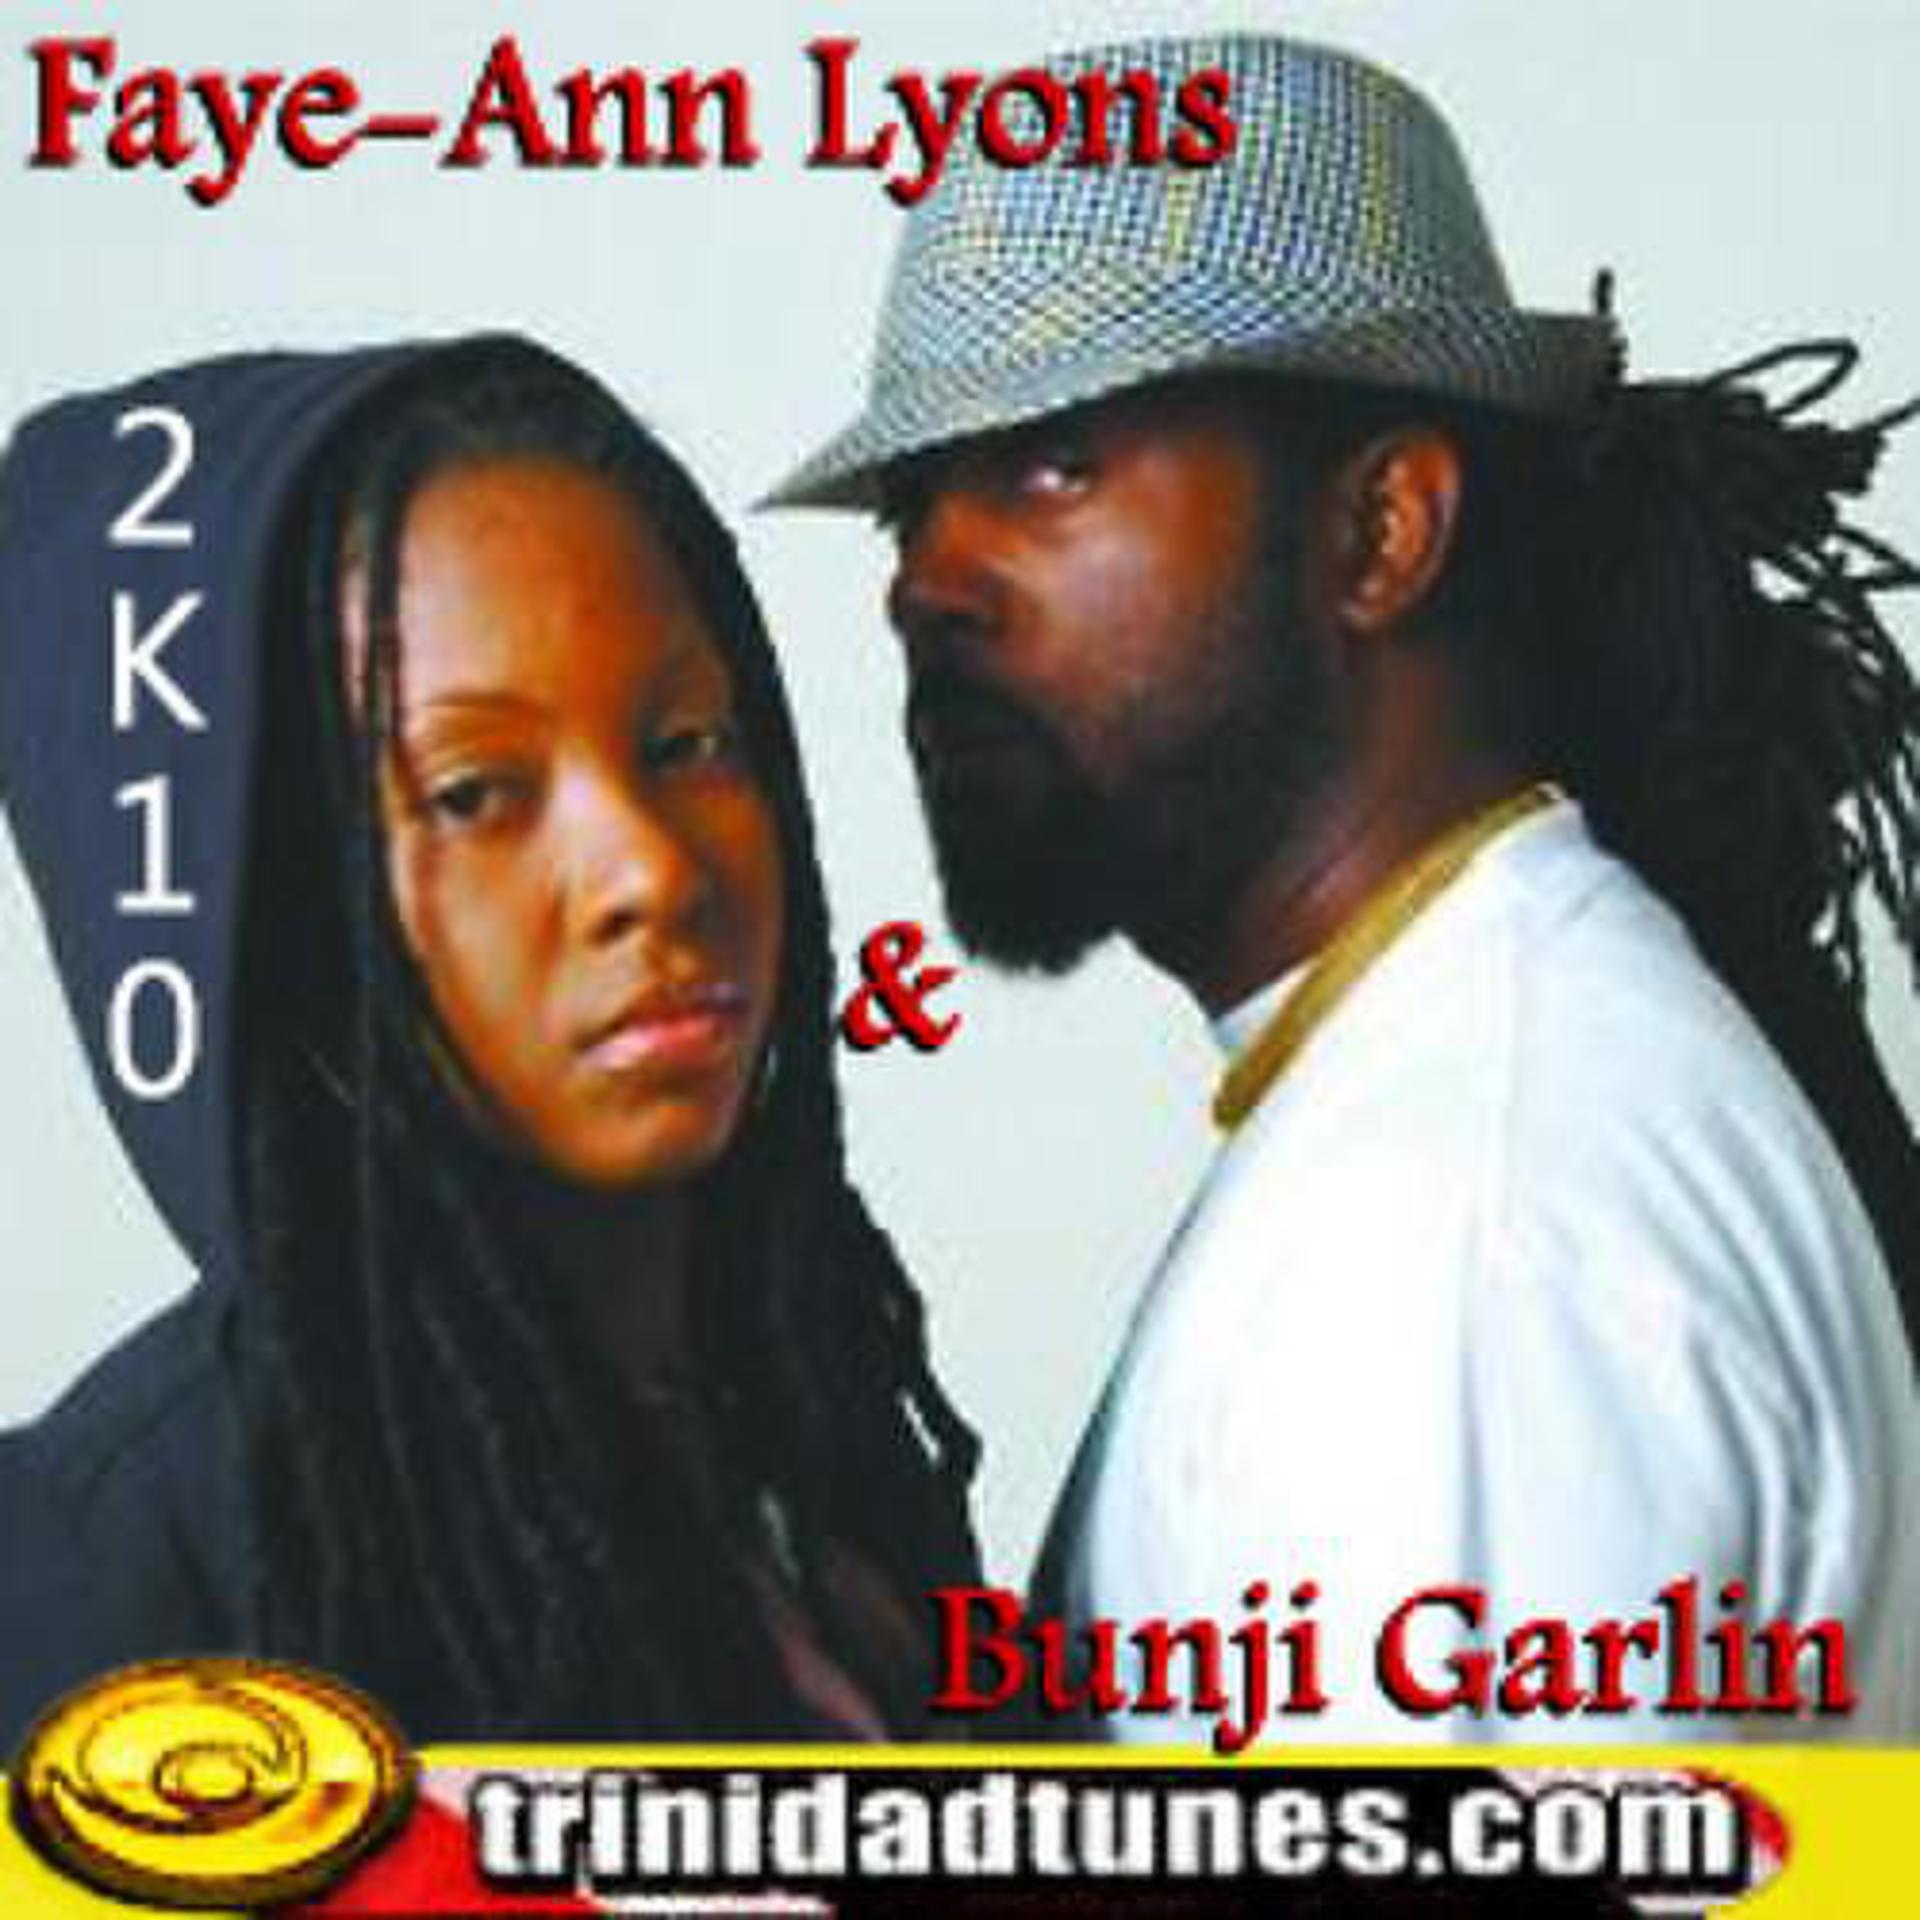 Постер альбома Faye-Ann Lyons & Bunji Garlin 2K10